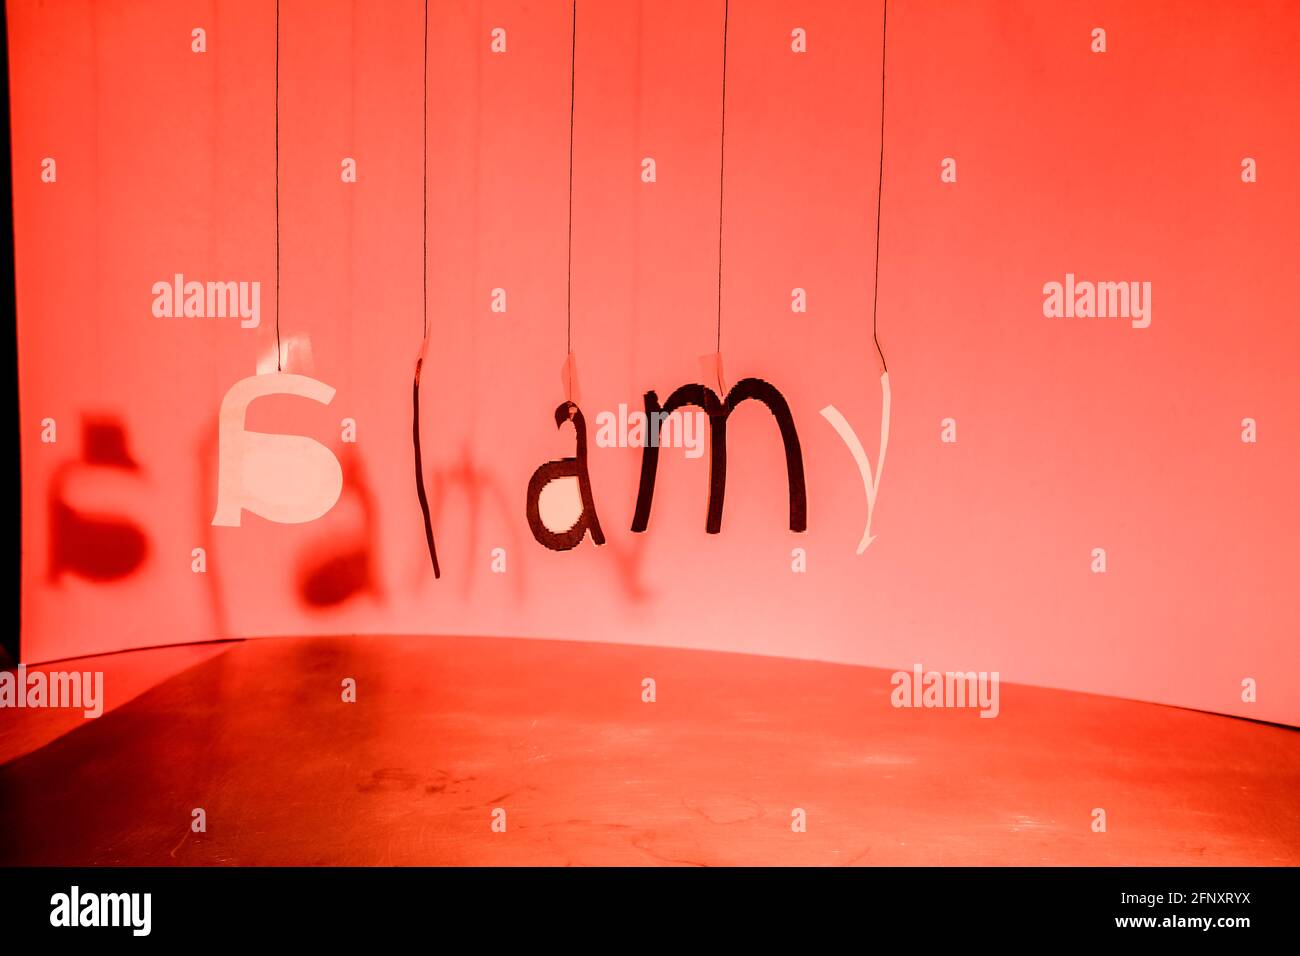 Le lettere appese ai fili formano, in un certo disordine, il logo Alamy. Spazio di copia. Foto Stock